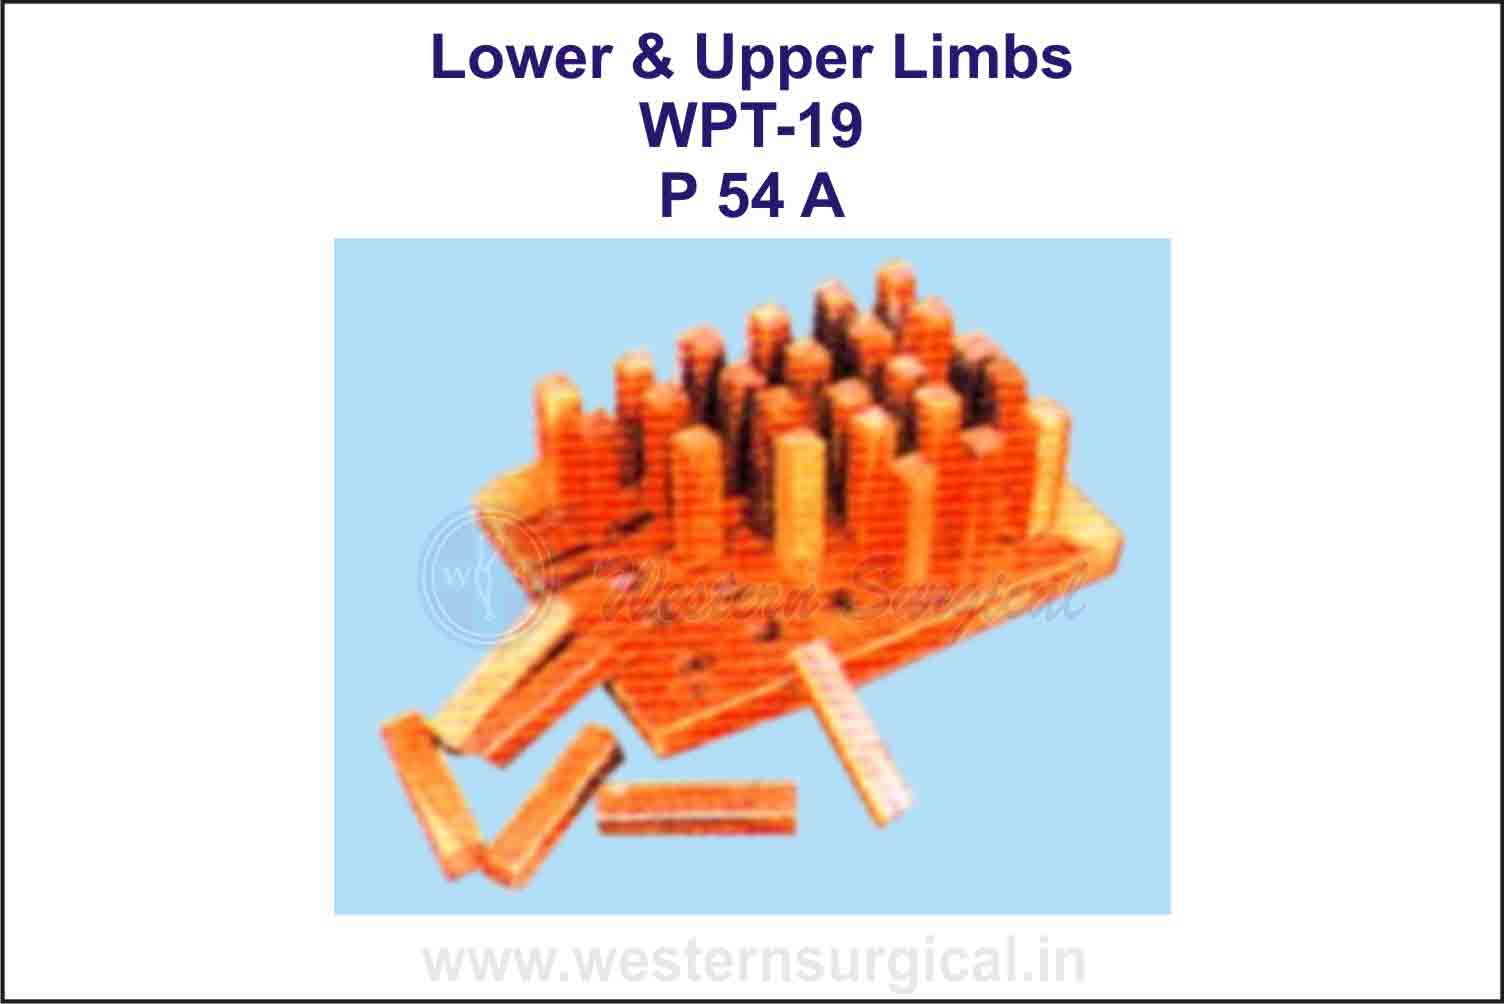 Lower & Upper Limbs